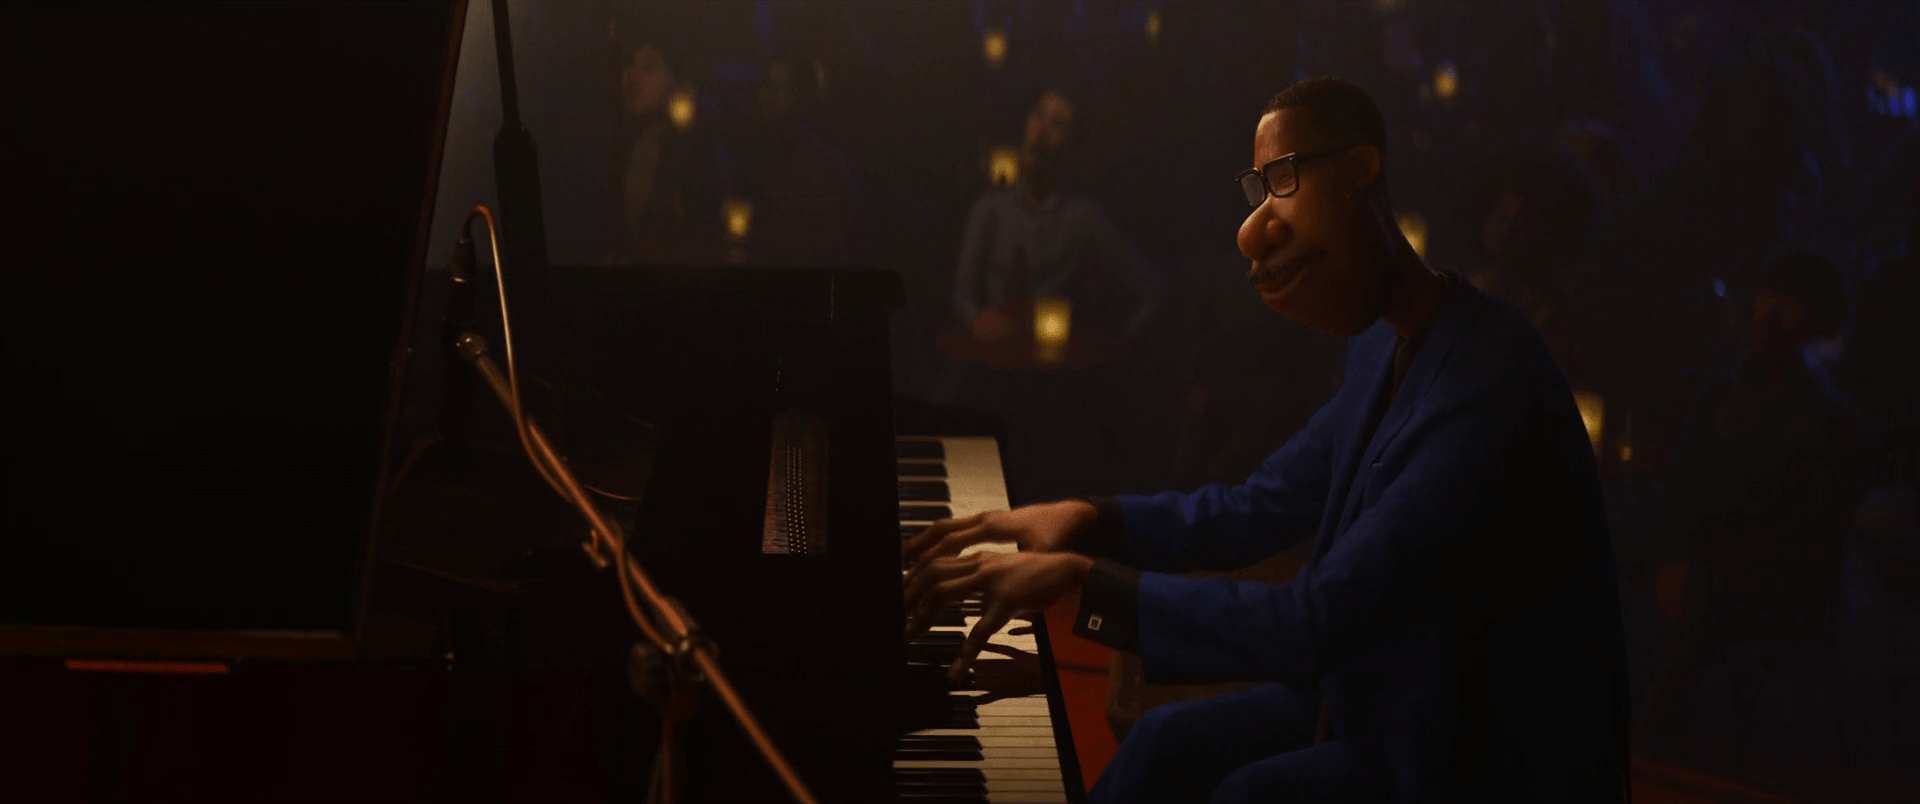 Fotografía de Soul. Joe tocando el piano en un bar de jazz.